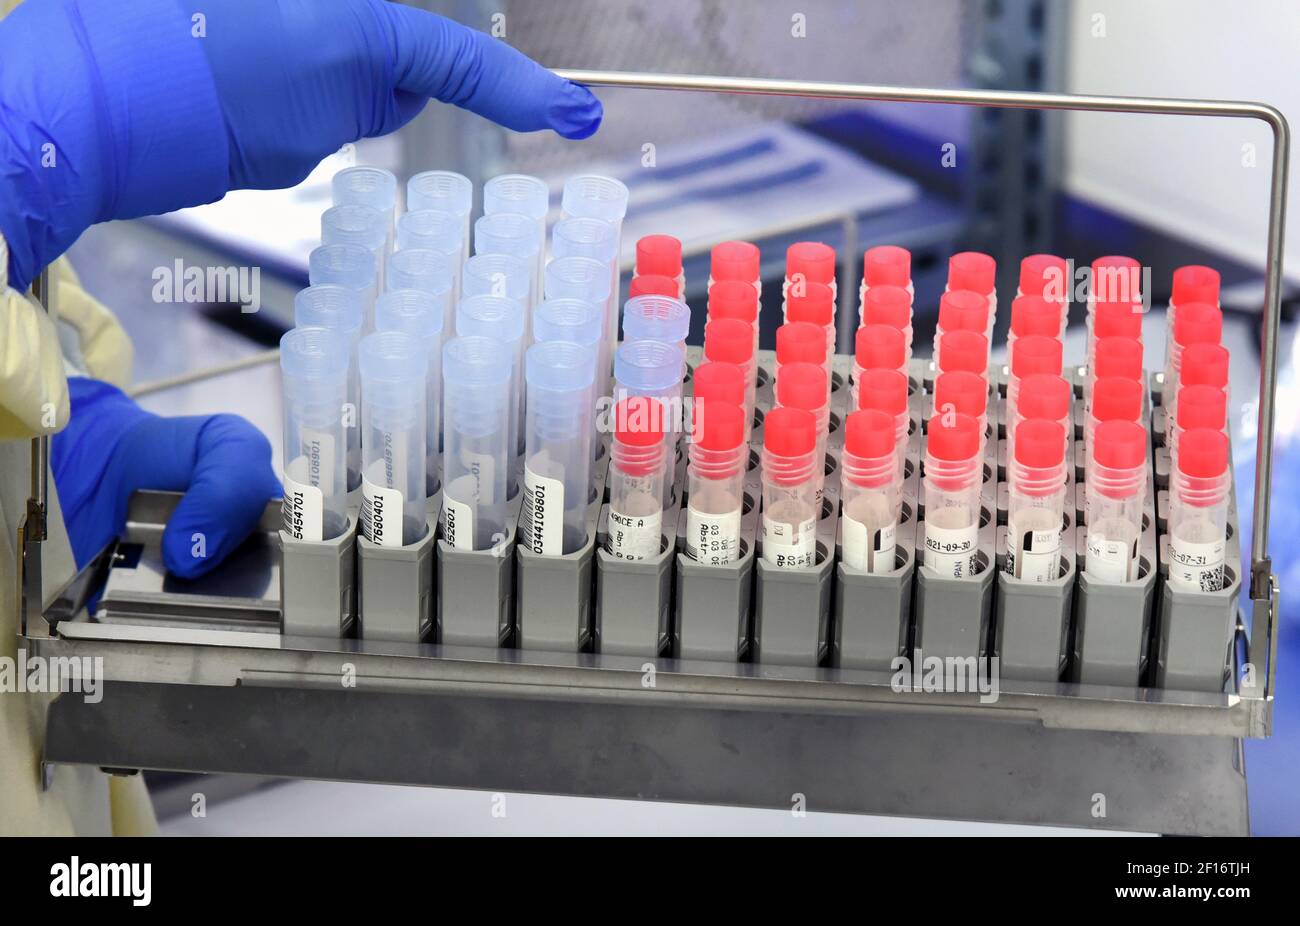 03 marzo 2021, Sassonia, Lipsia: Presso il laboratorio MVZ, il responsabile del reparto PCR, Dr. Katja Sänger, preleva i campioni SARS-COV-2 dall'analizzatore PCR. Il laboratorio, che appartiene al gruppo Limbach, elabora circa 10,000 campioni PCR alla settimana per il rilevamento della SARS-COV-2 per ospedali e medici in pratica privata. Attualmente, vengono diagnosticate anche varianti di virus con un potenziale di rischio aumentato, compresa la variante britannica B.1.1.7 attualmente particolarmente diffusa, ma anche le varianti di virus sudafricani e brasiliani. Foto: Waltraud Grubitzsch/dpa-Zentralbild/ZB Foto Stock